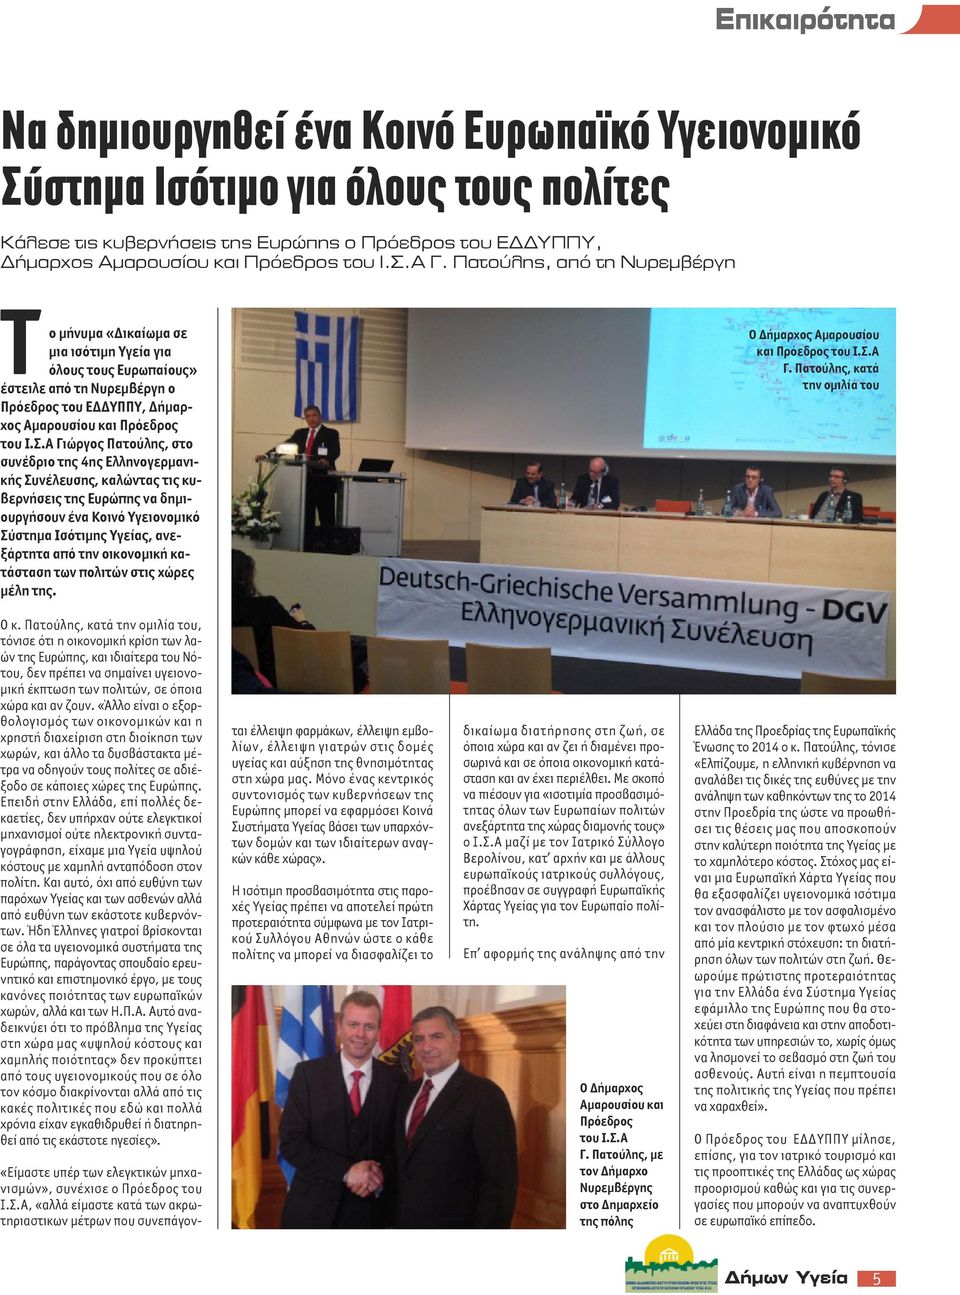 Α Γιώργος Πατούλης, στο συνέδριο της 4ης Ελληνογερμανικής Συνέλευσης, καλώντας τις κυβερνήσεις της Ευρώπης να δημιουργήσουν ένα Κοινό Υγειονομικό Σύστημα Ισότιμης Υγείας, ανεξάρτητα από την